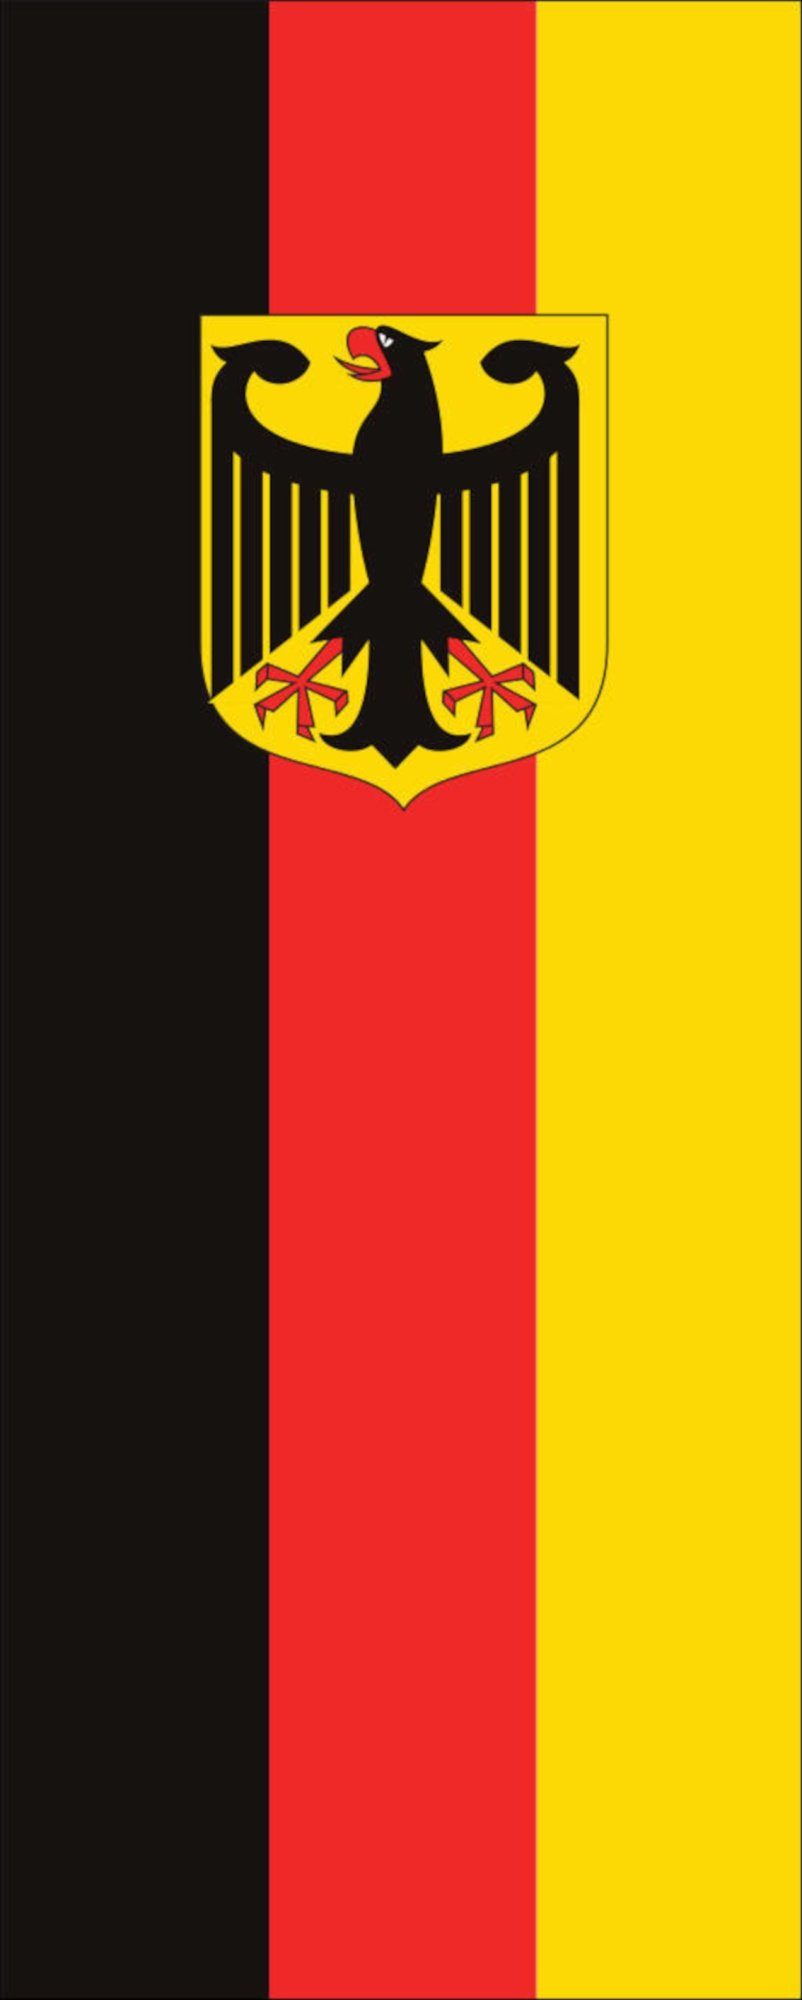 flaggenmeer Flagge Flagge Deutschland mit Adler 110 g/m² Hochformat